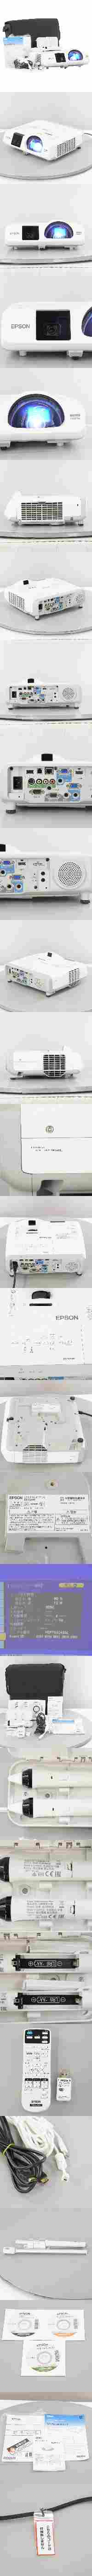 最安値SALE[PG]USED 8日保証 ランプ92時間 EPSON EB-536WT H670D LCD PROJECTOR プロジェクター ELPAP07 WXGA 3400lm HDMI ソフトウ...[ST03154-0041] 本体